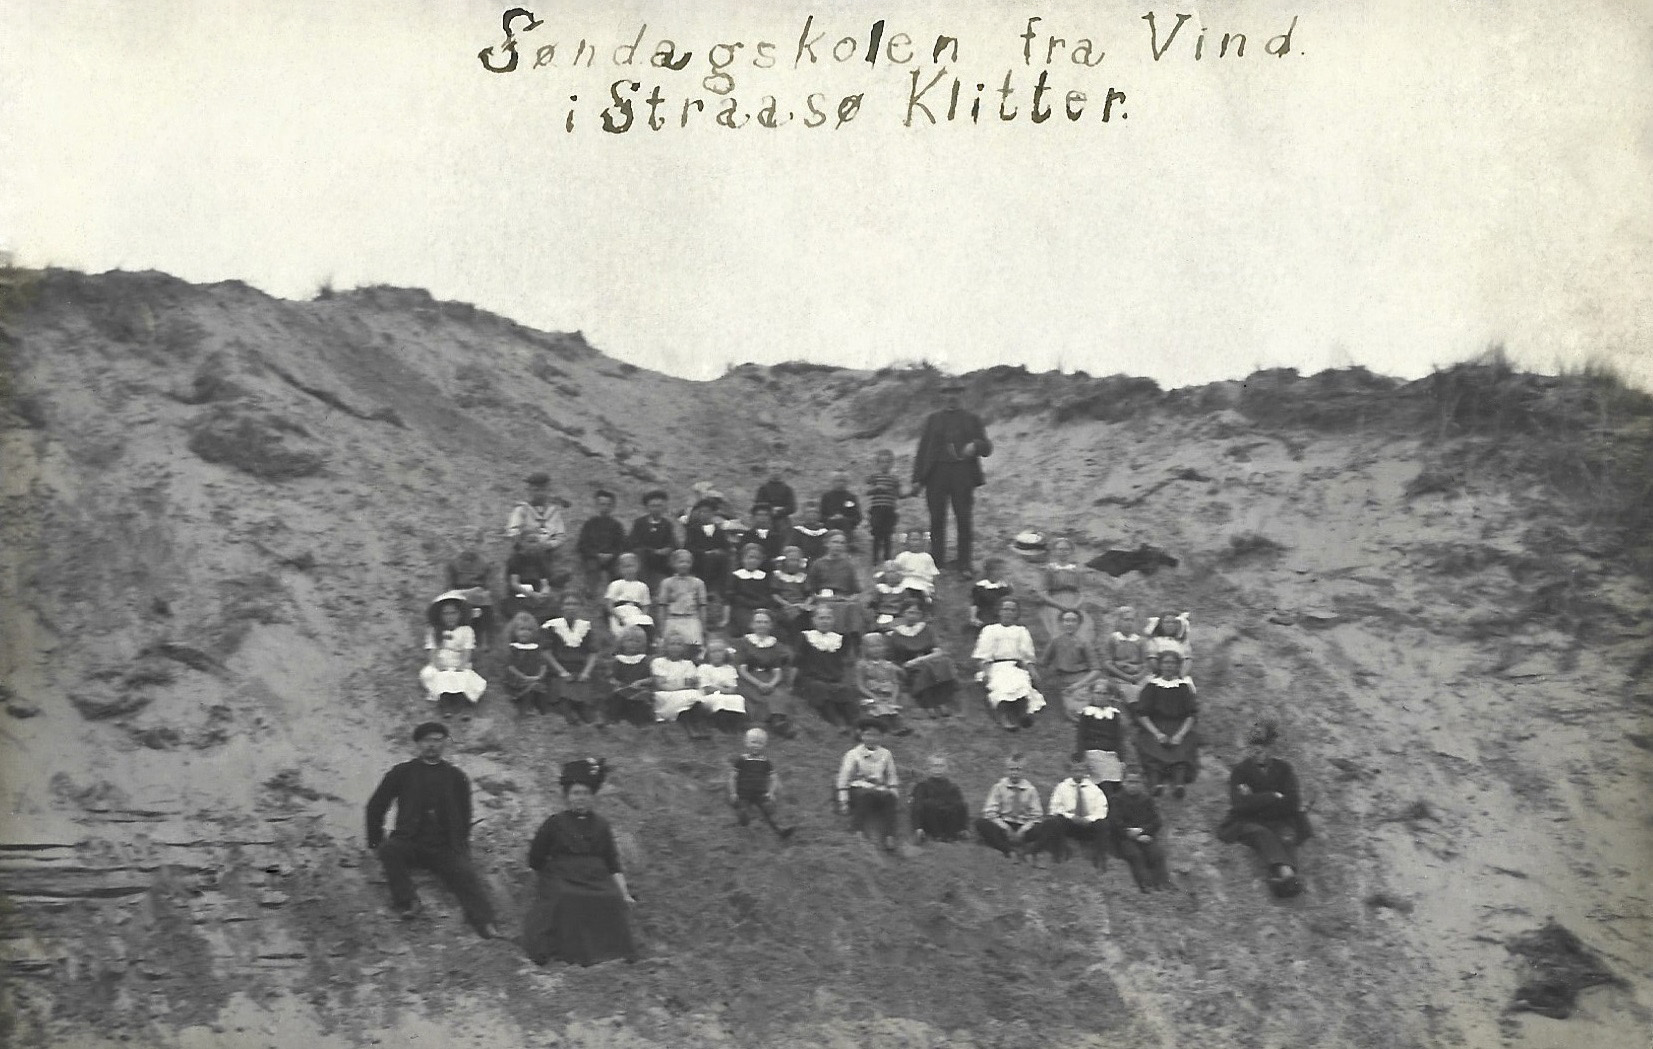 Søndagsskoleudflugt til indlandsklitterne i Stråsø, omkring 1915.